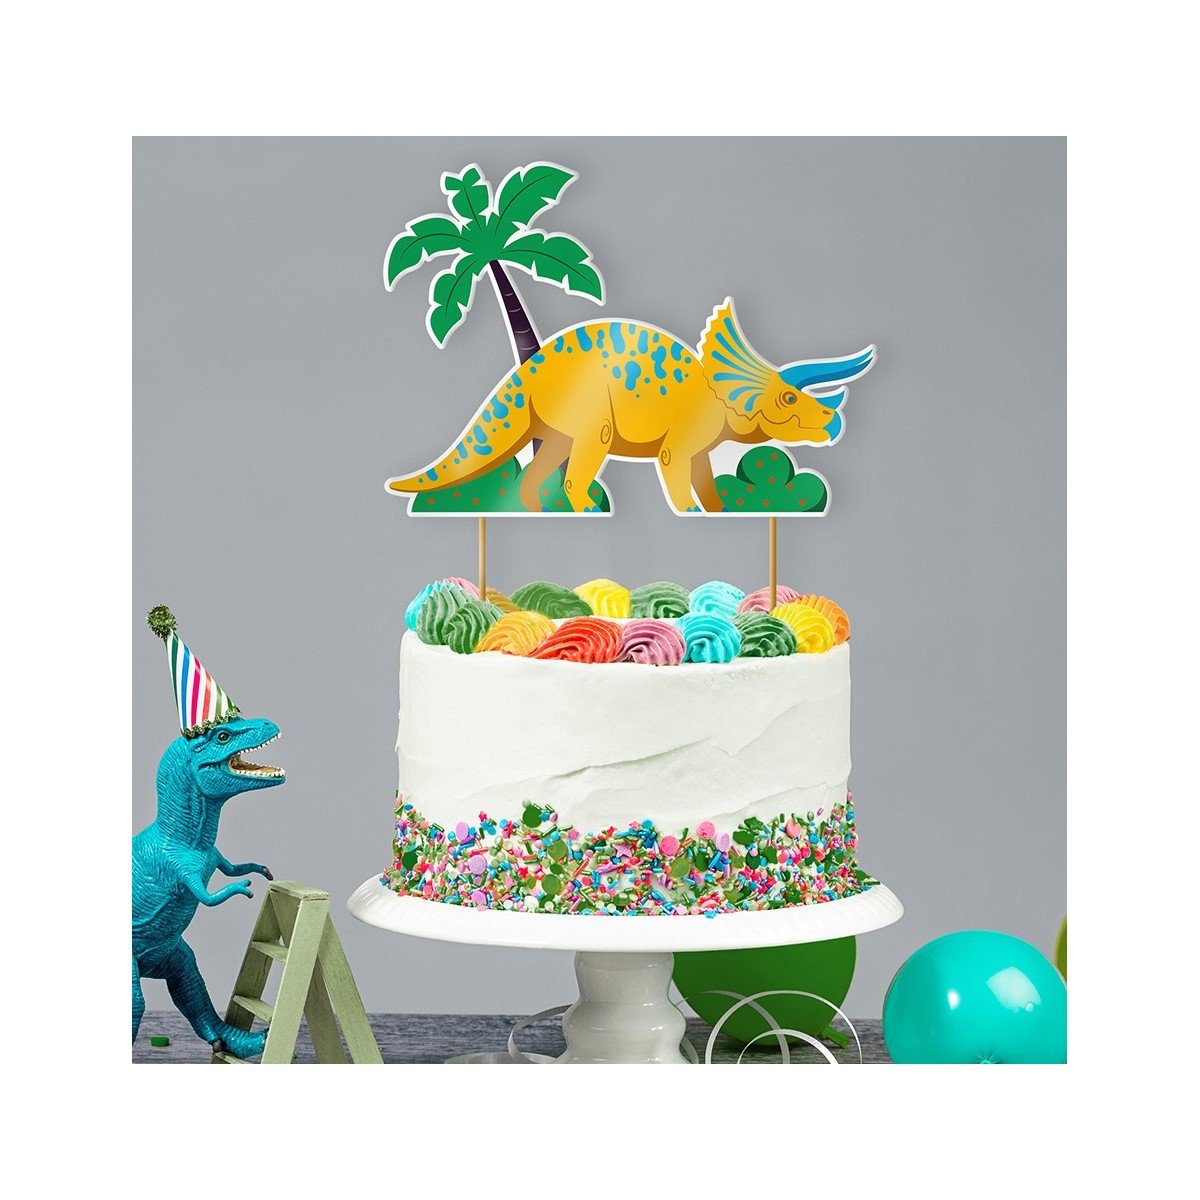 Disque gâteau Dinosaures (19 cm) pour l'anniversaire de votre